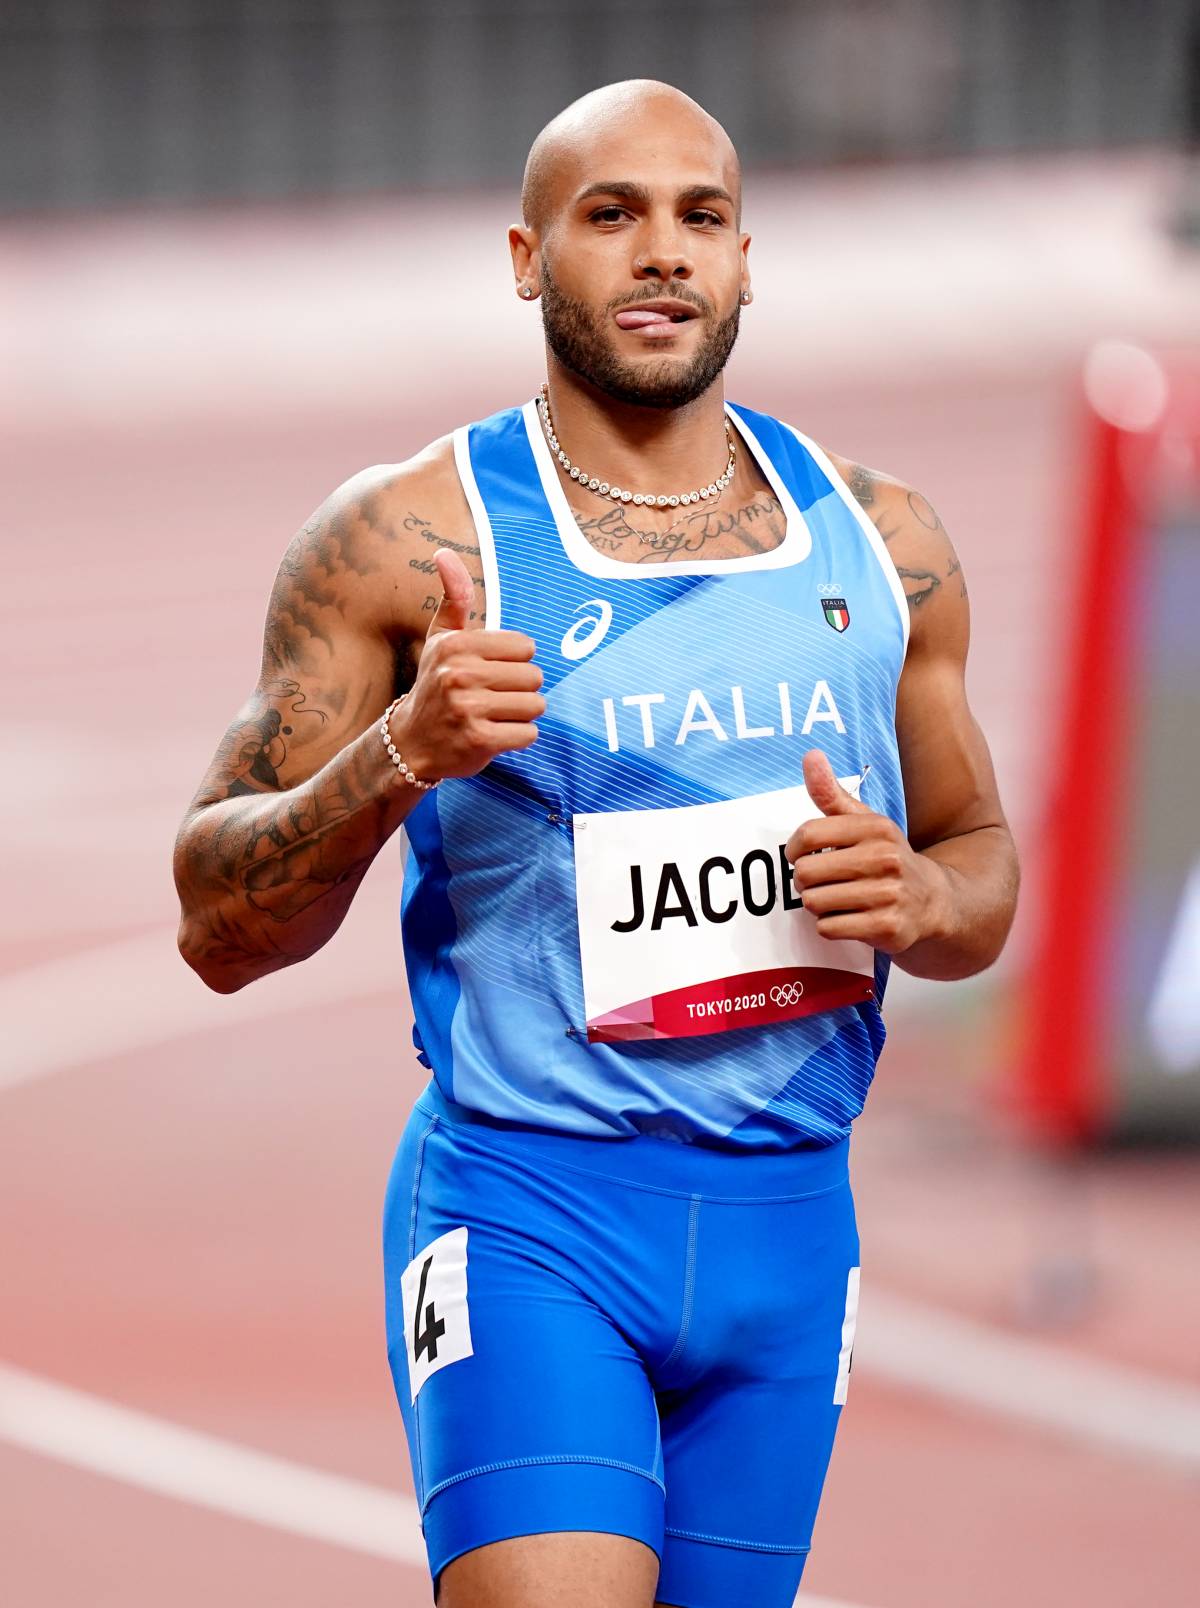 Ritorno con vittoria per Jacobs: domina i 60m indoor a Berlino